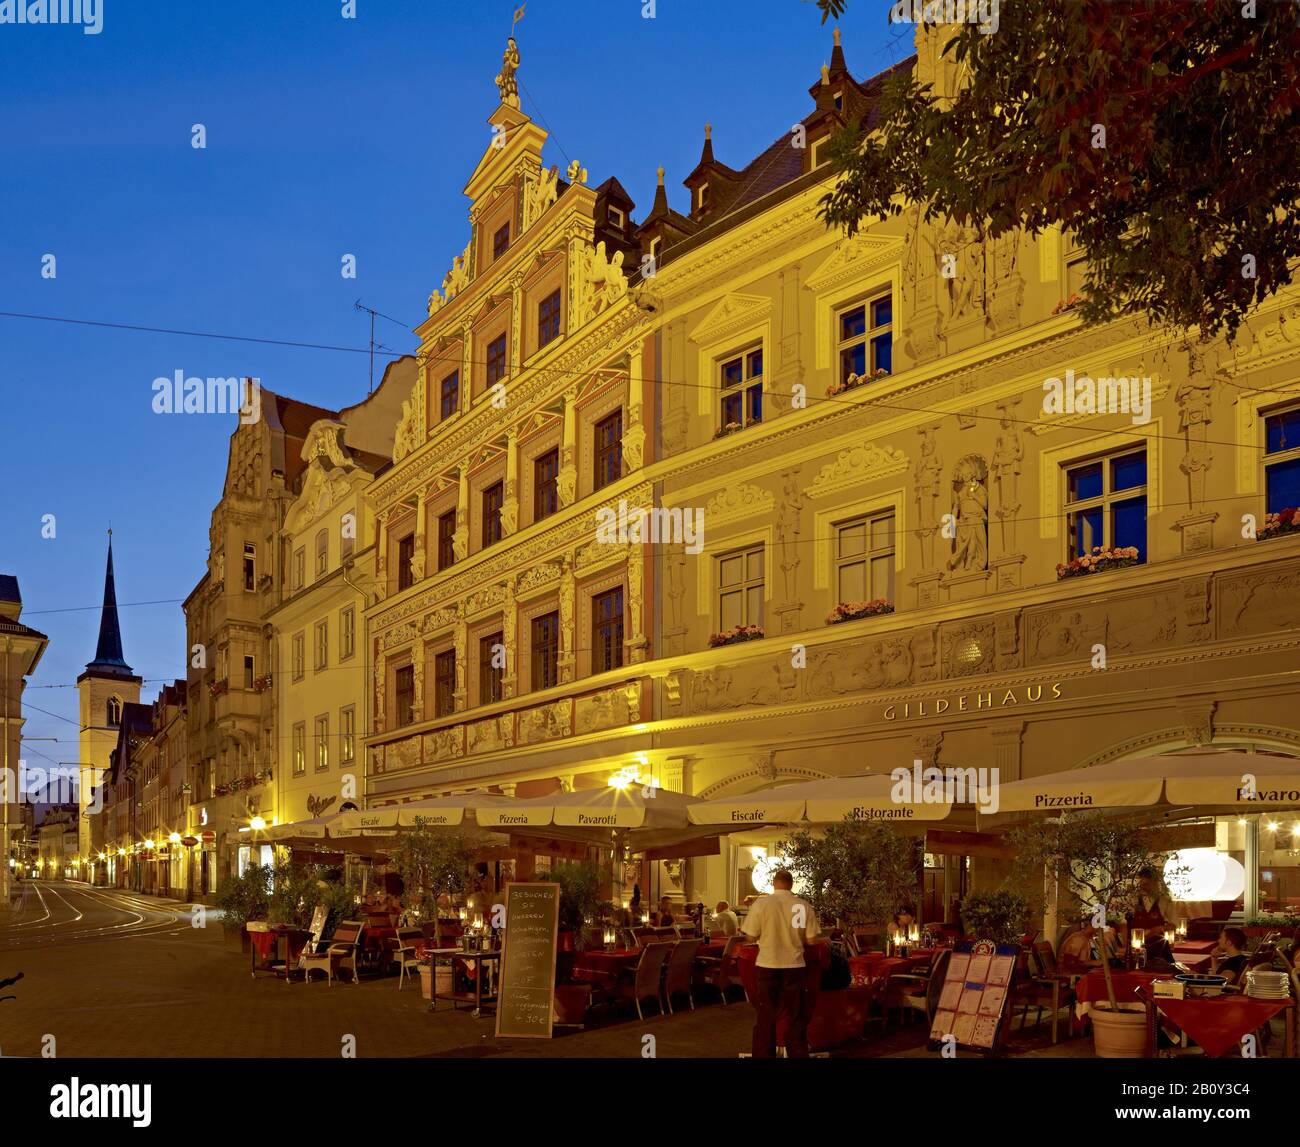 Haus zum weiten Herd und Gildehaus mit Blick auf die Marktstraße in Erfurt, Thüringen, Deutschland Stockfoto